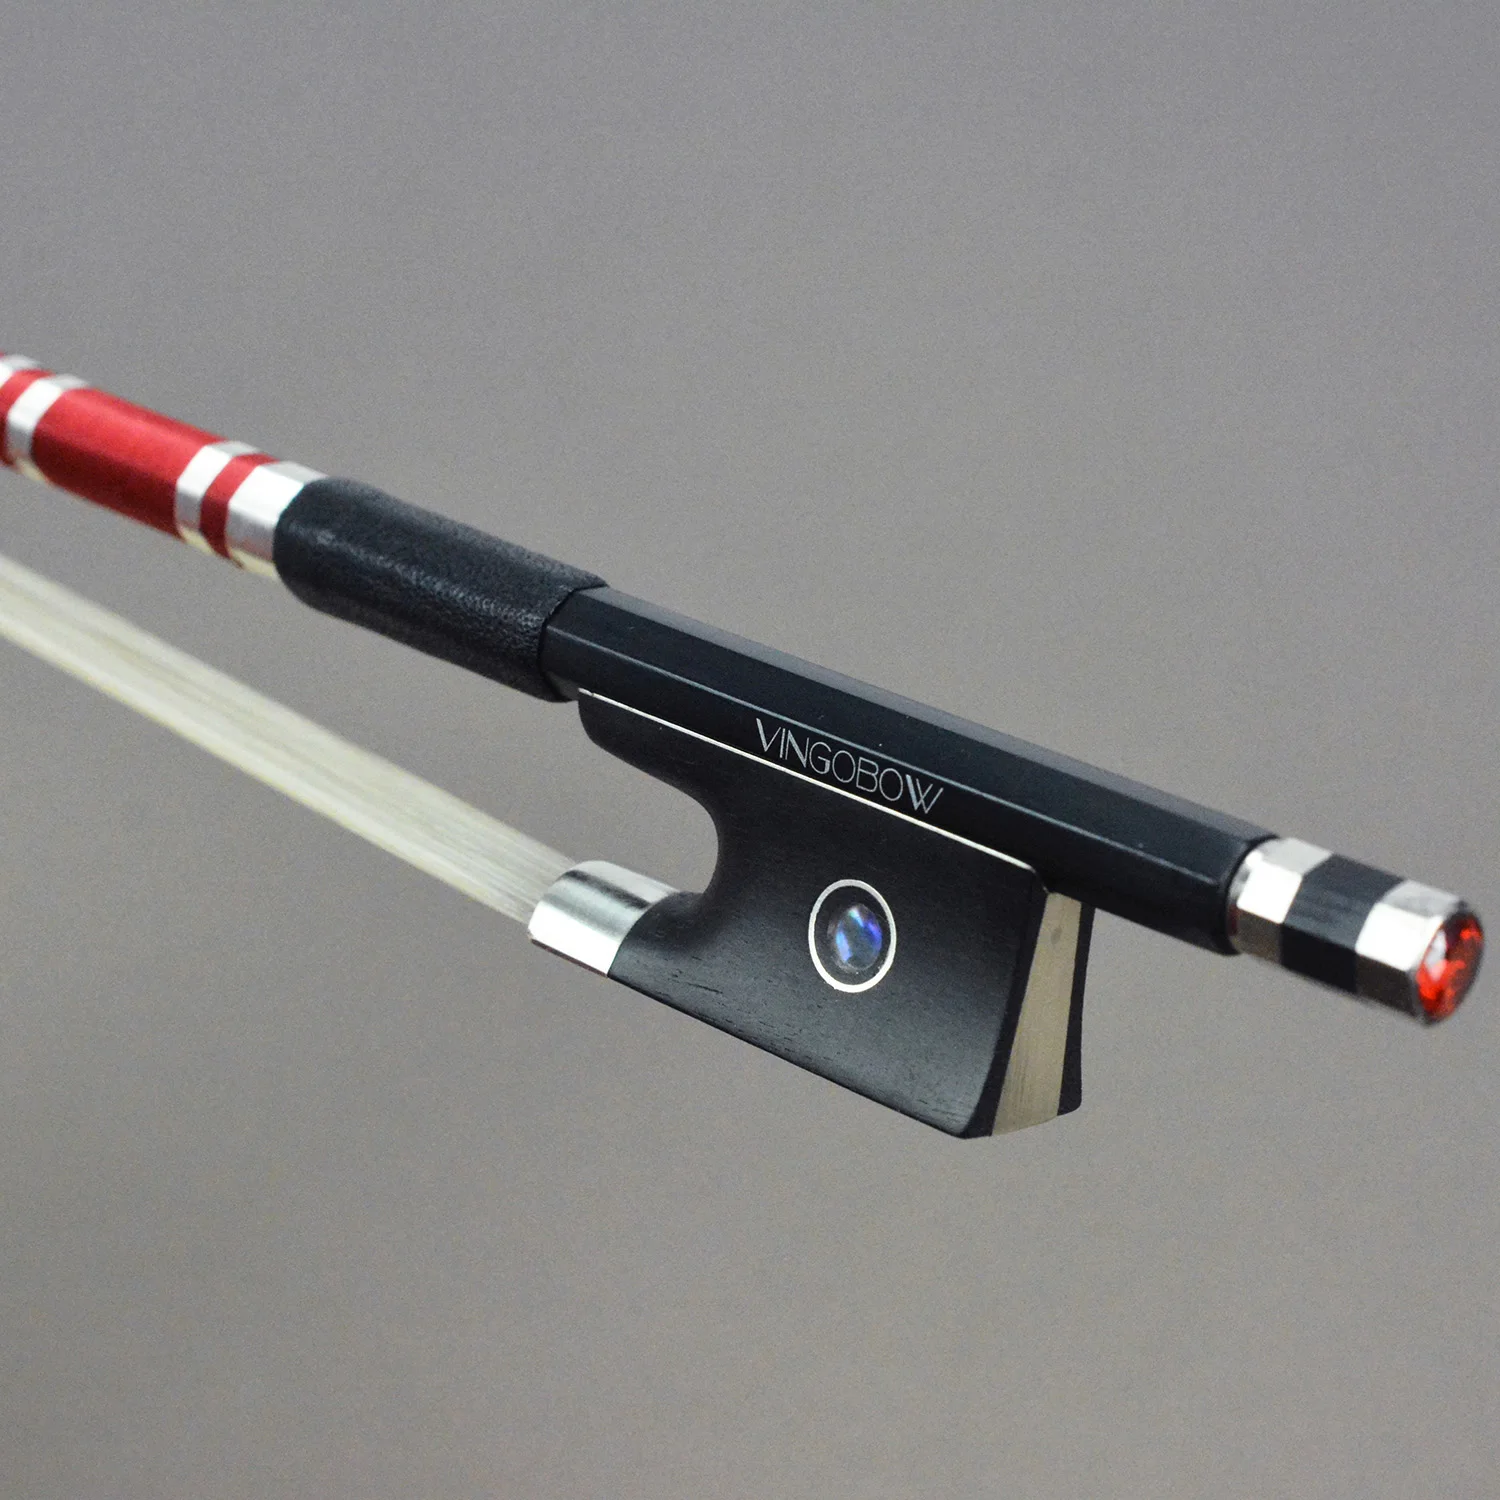 ¡Nuevo modelo! Arco de violín avanzado de fibra de carbono, diseño único con Vingobow de cristal rojo, 103V